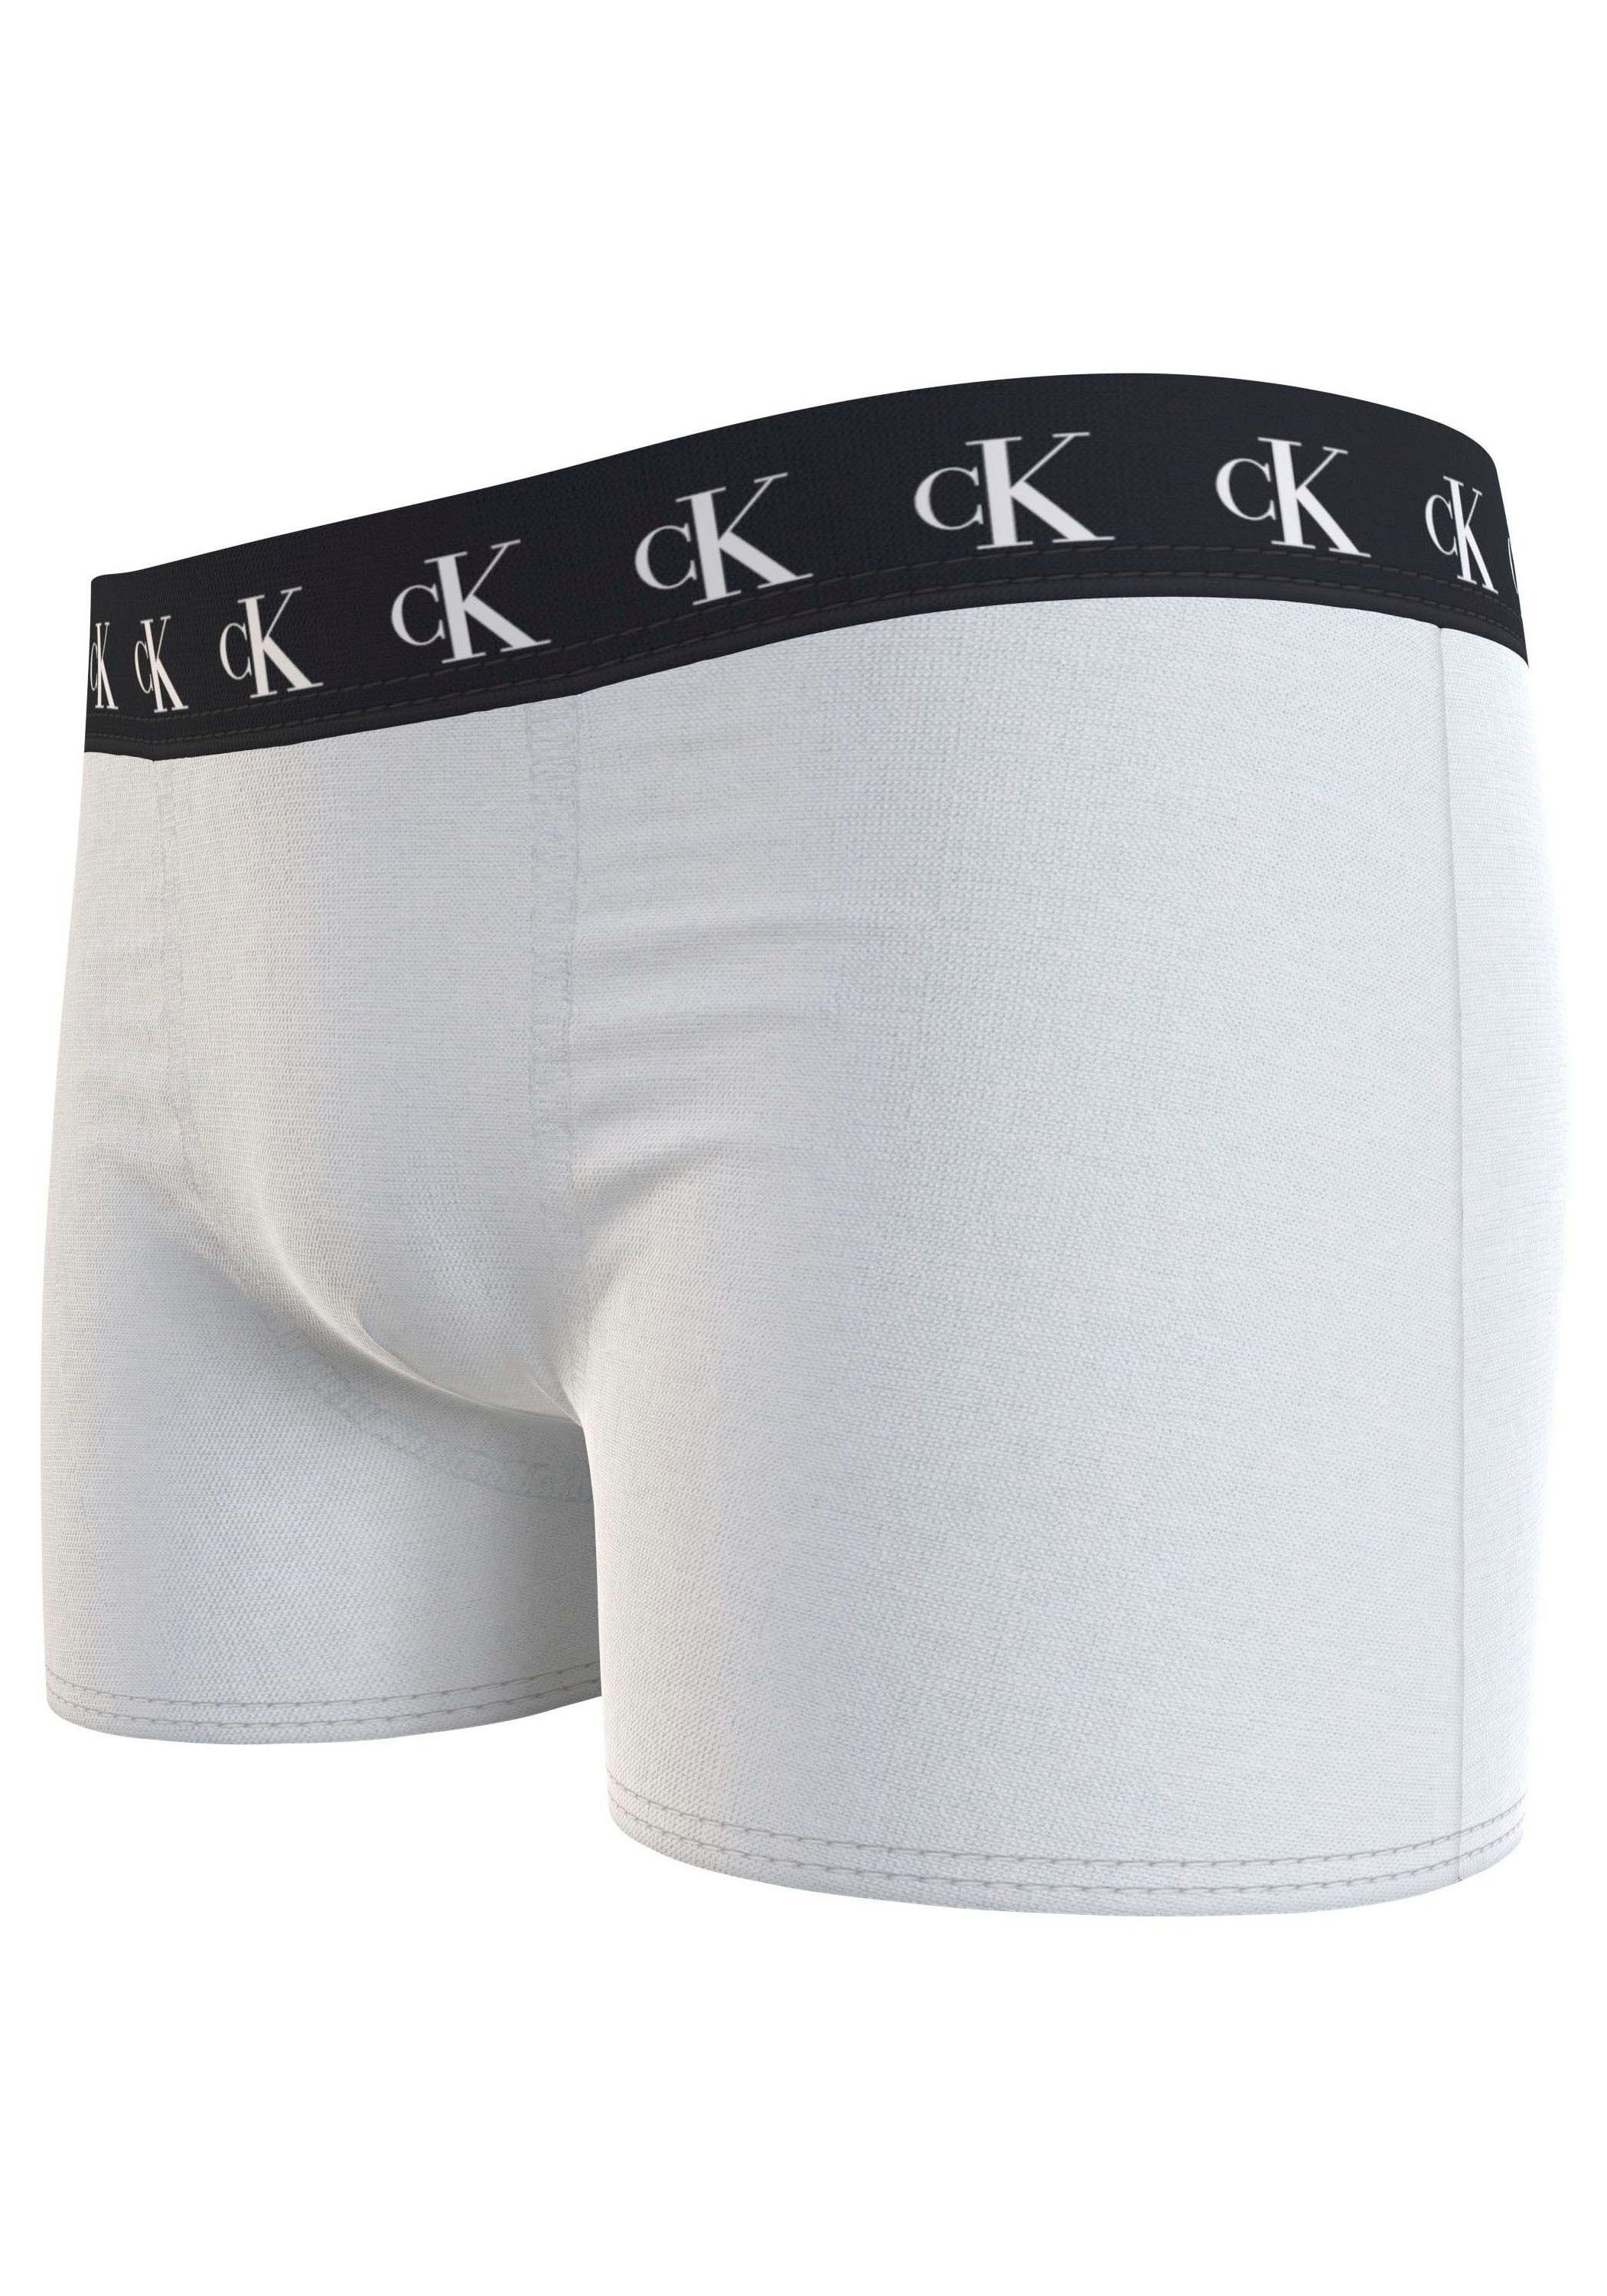 3PK TRUNK Underwear Calvin (Packung, Markenlabel Calvin Klein Bund Slip Klein Tarpsblue/Pvhwhite/Pvhblack mit 3er-Pack) am